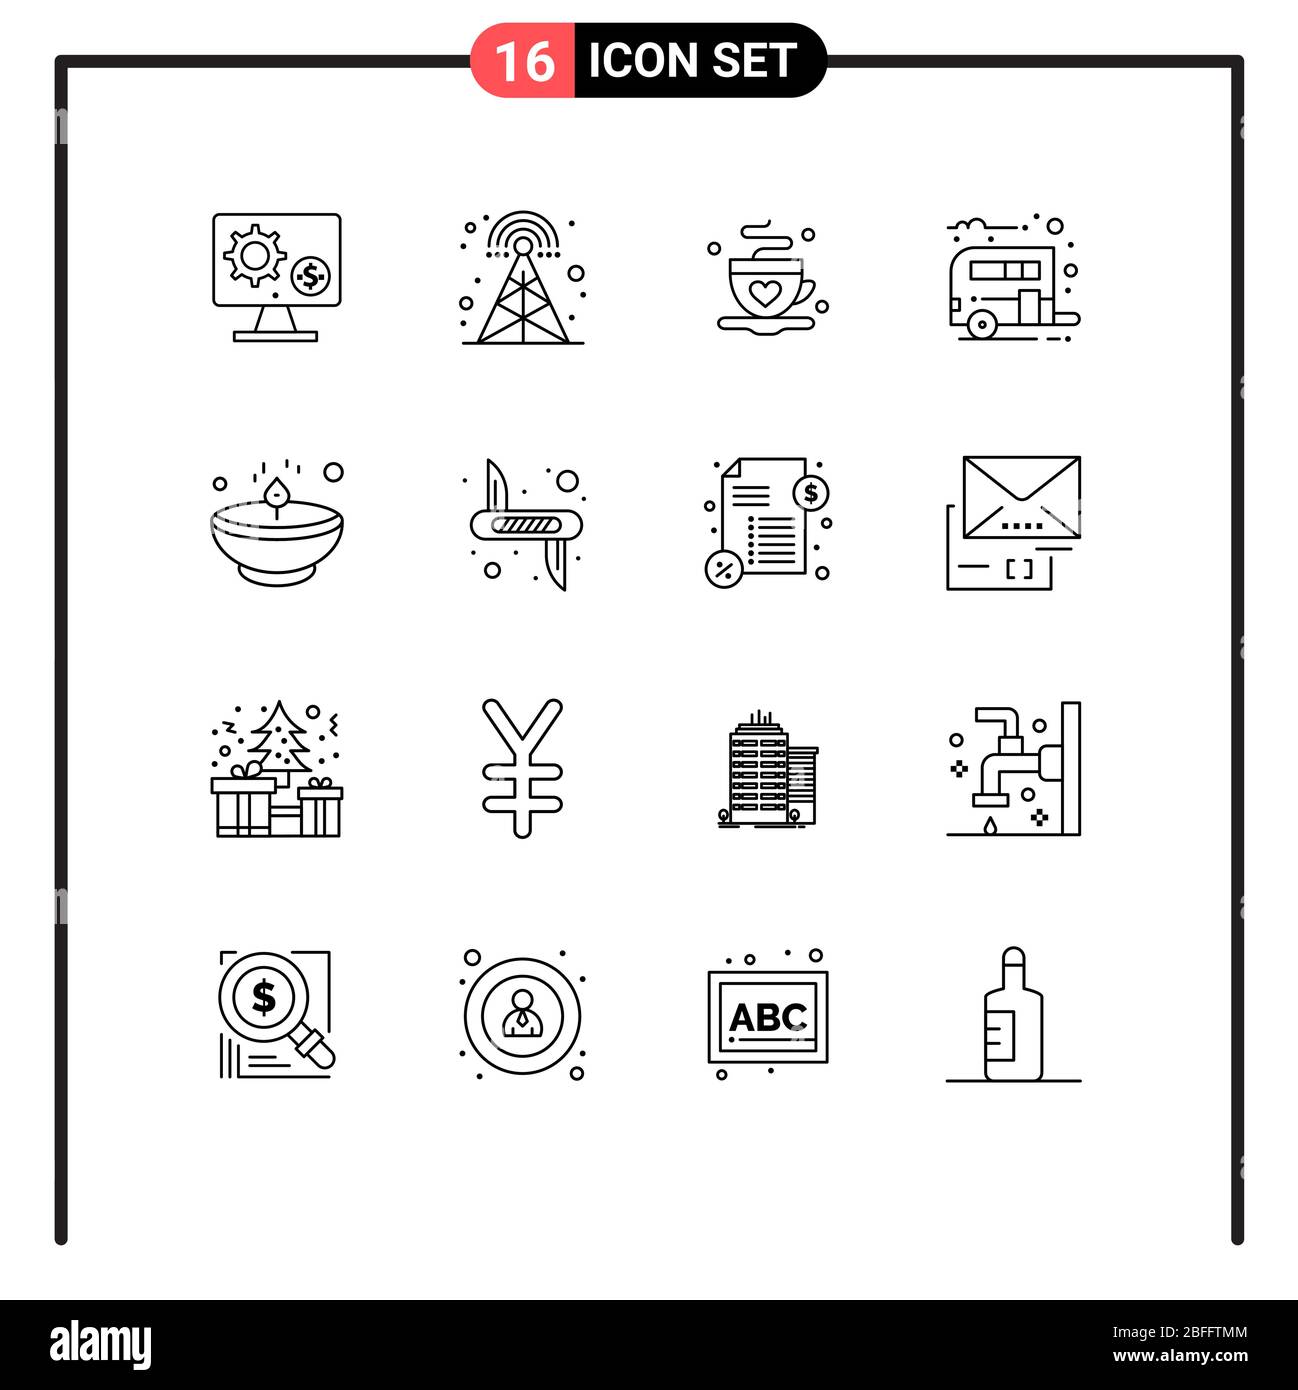 Ensemble de 16 icônes modernes d'interface utilisateur symboles signes pour le transport, camping, radio, camp, thé Editable Vector Design Elements Illustration de Vecteur